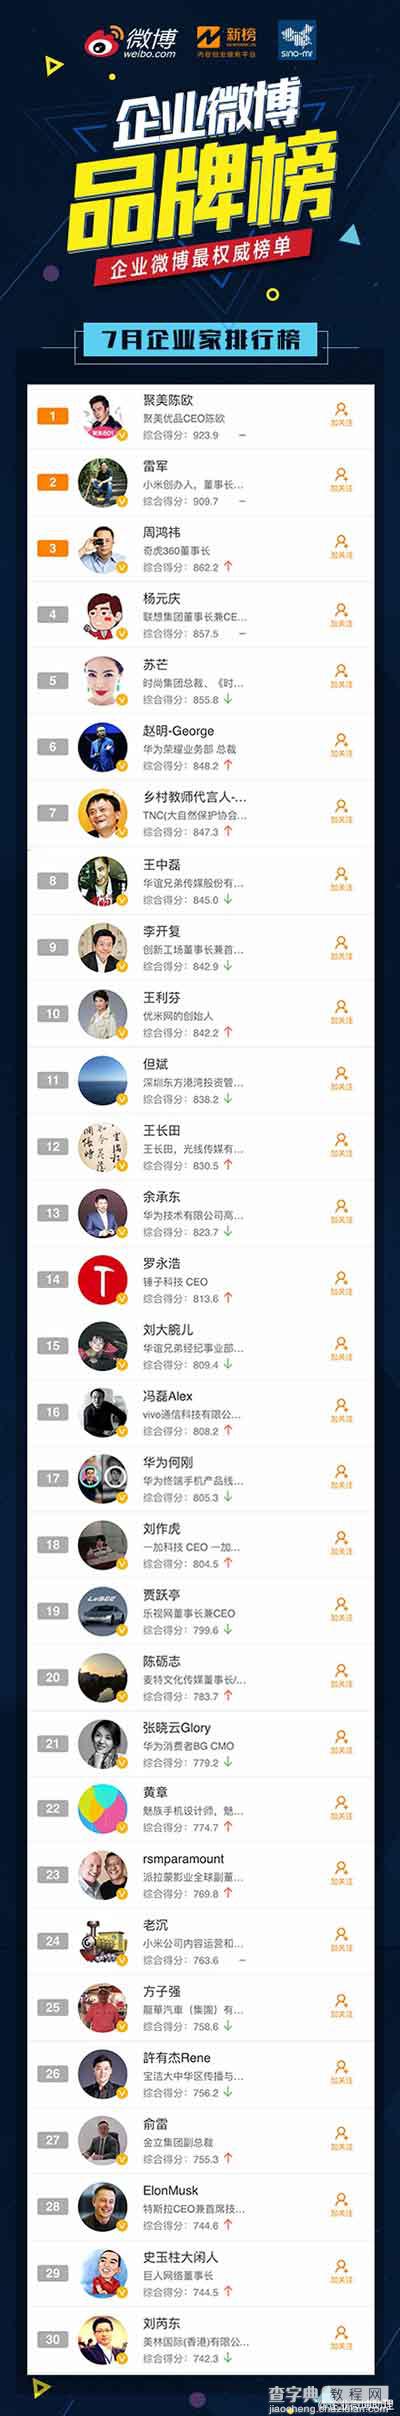 2016.7月企业手机微博品牌榜发布:小米第一5